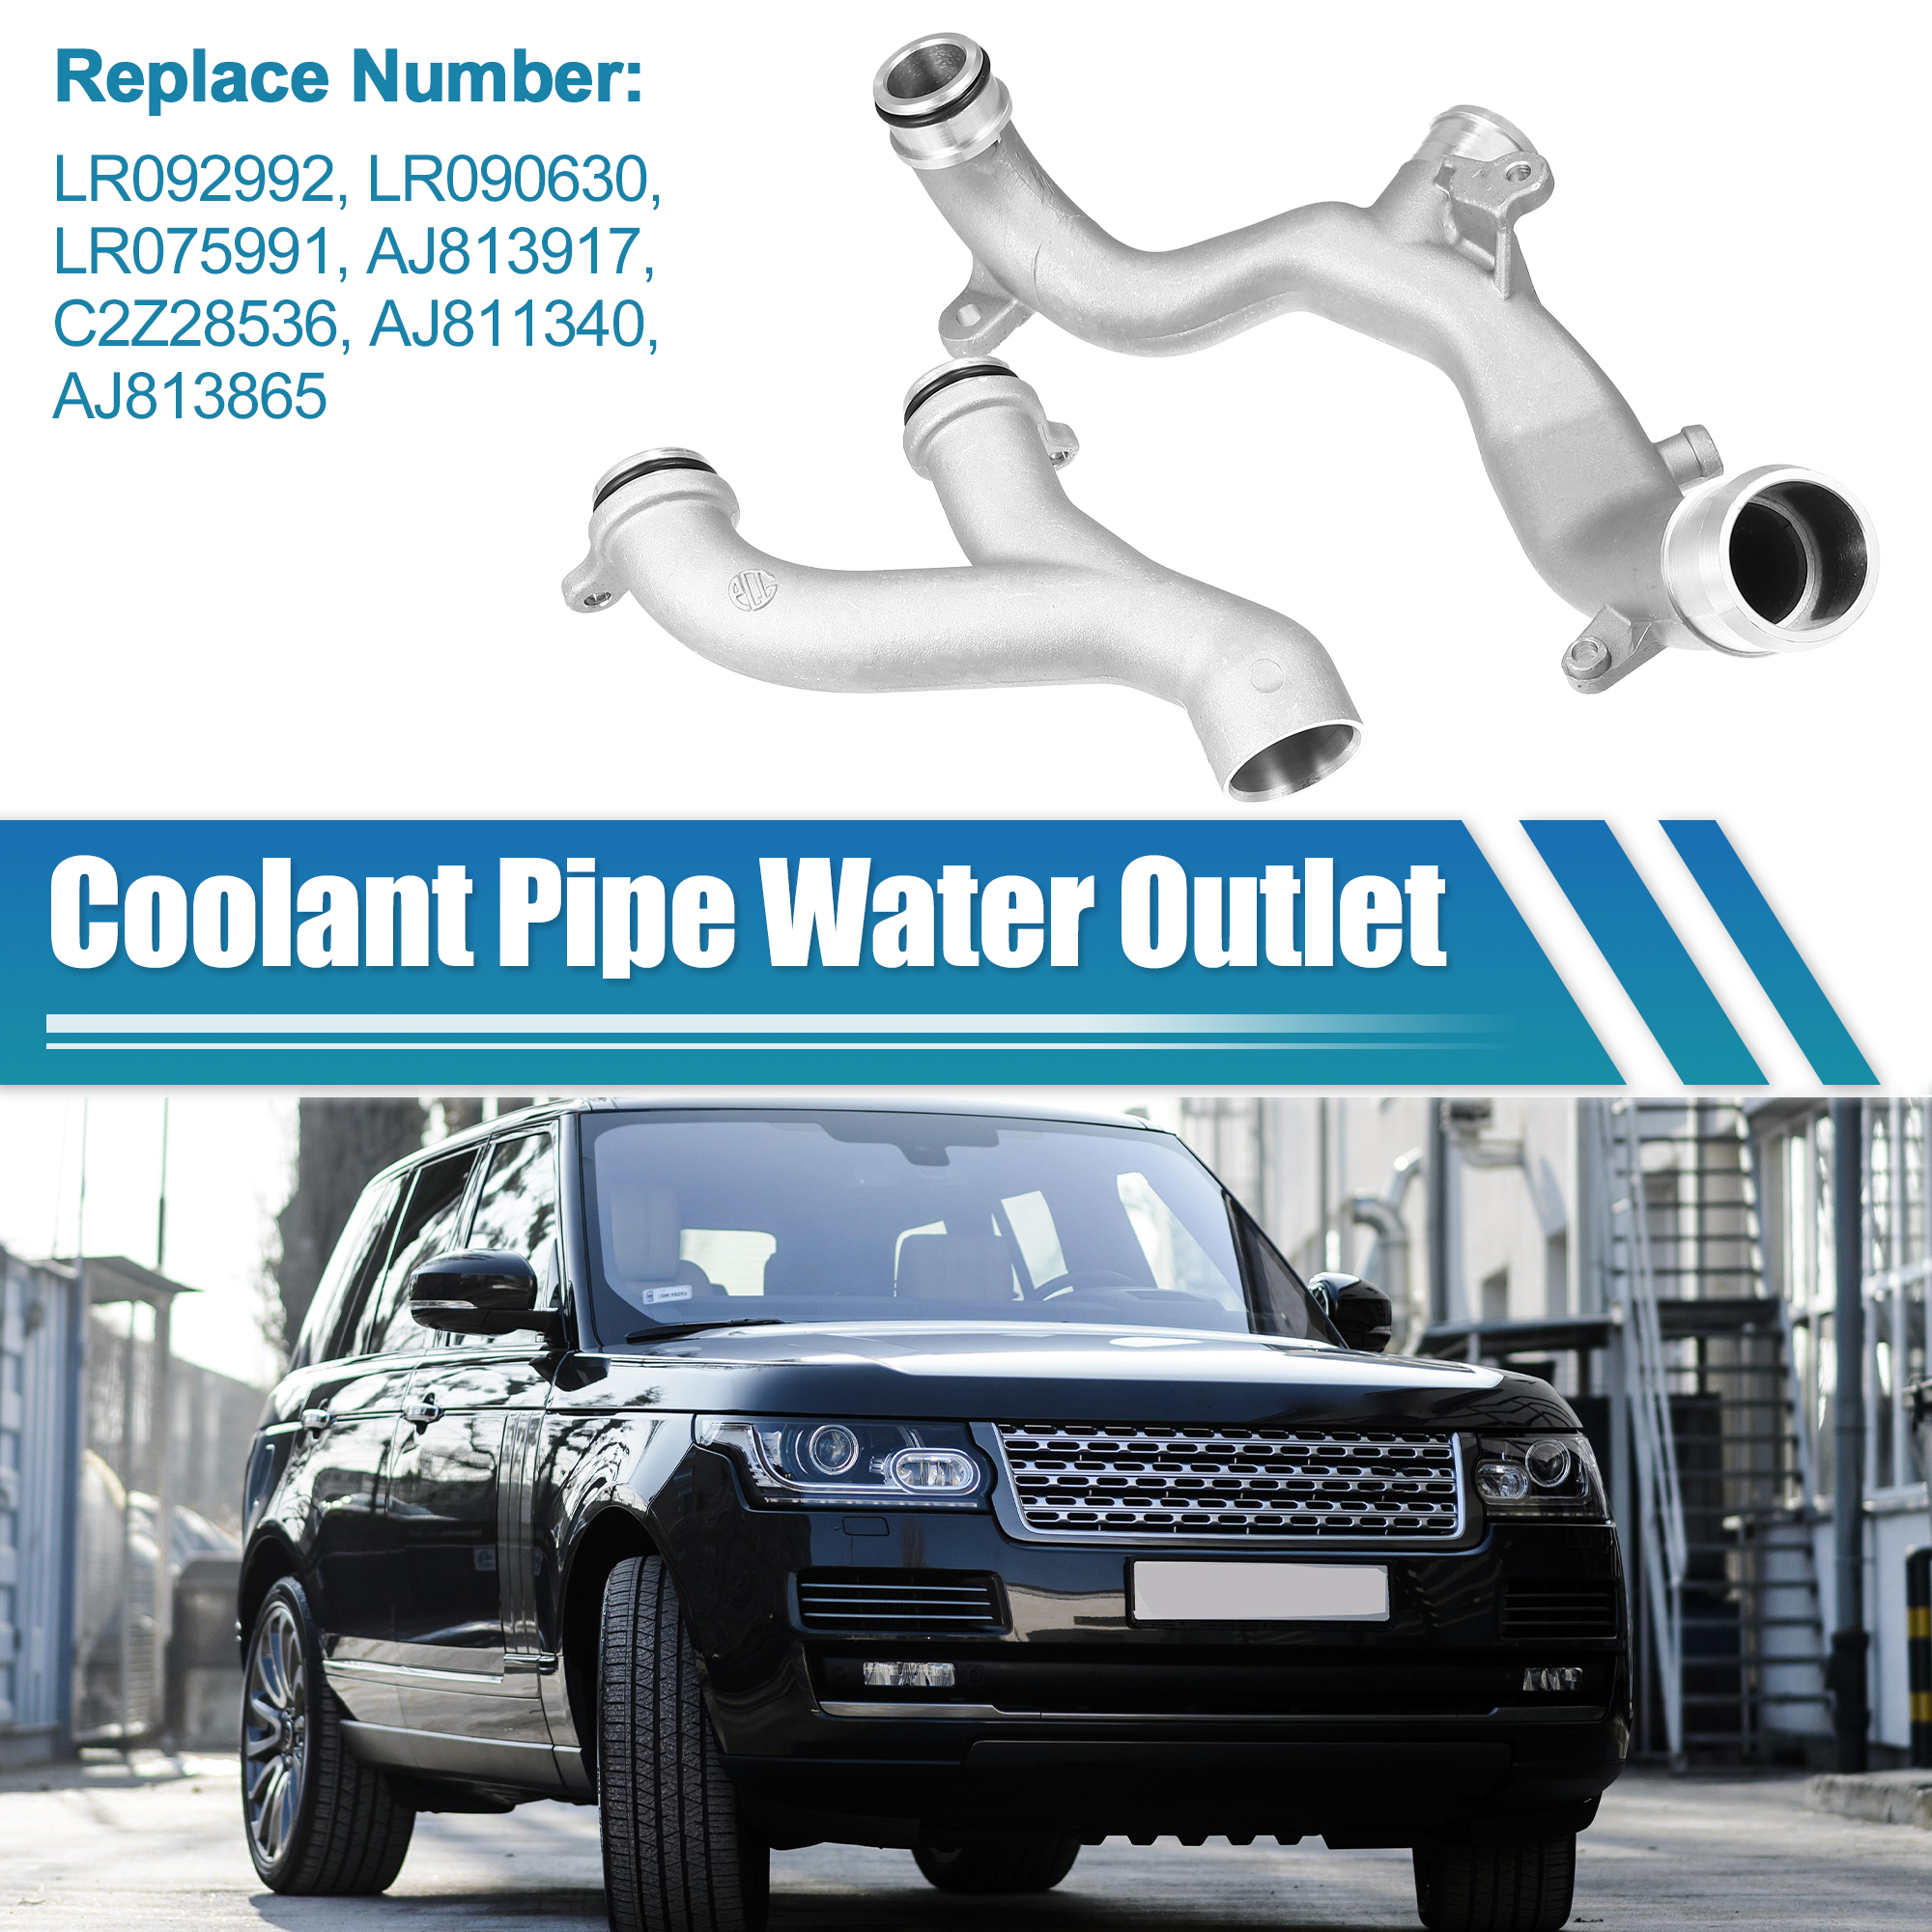 Unique Bargains Aluminum Coolant Pipe Water Outlet for Land Rover for Jaguar LR092992 LR090630